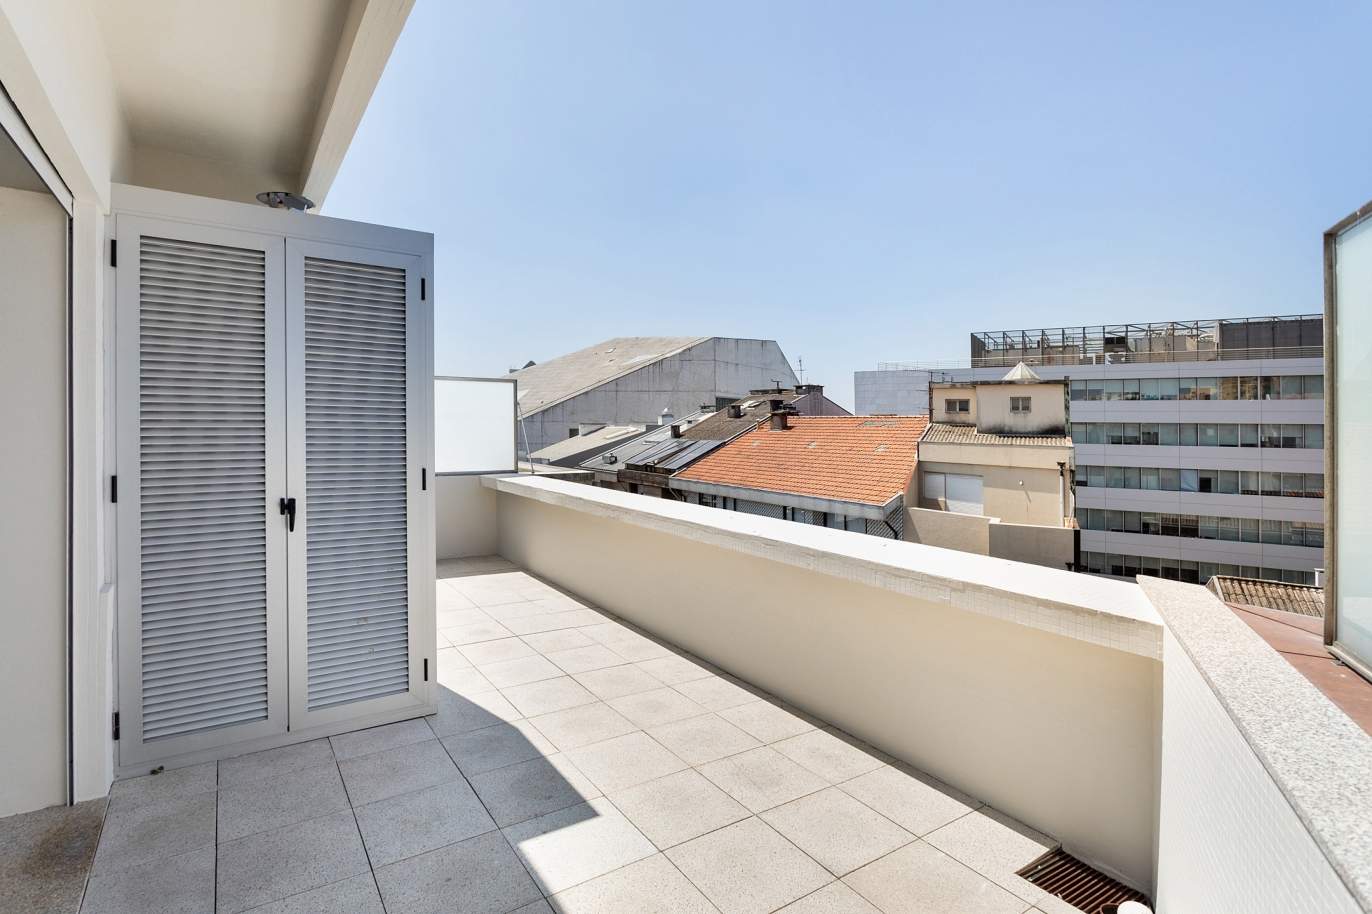 Apartment with balcony and terrace, for sale, in Boavista, Porto, Portugal_176562